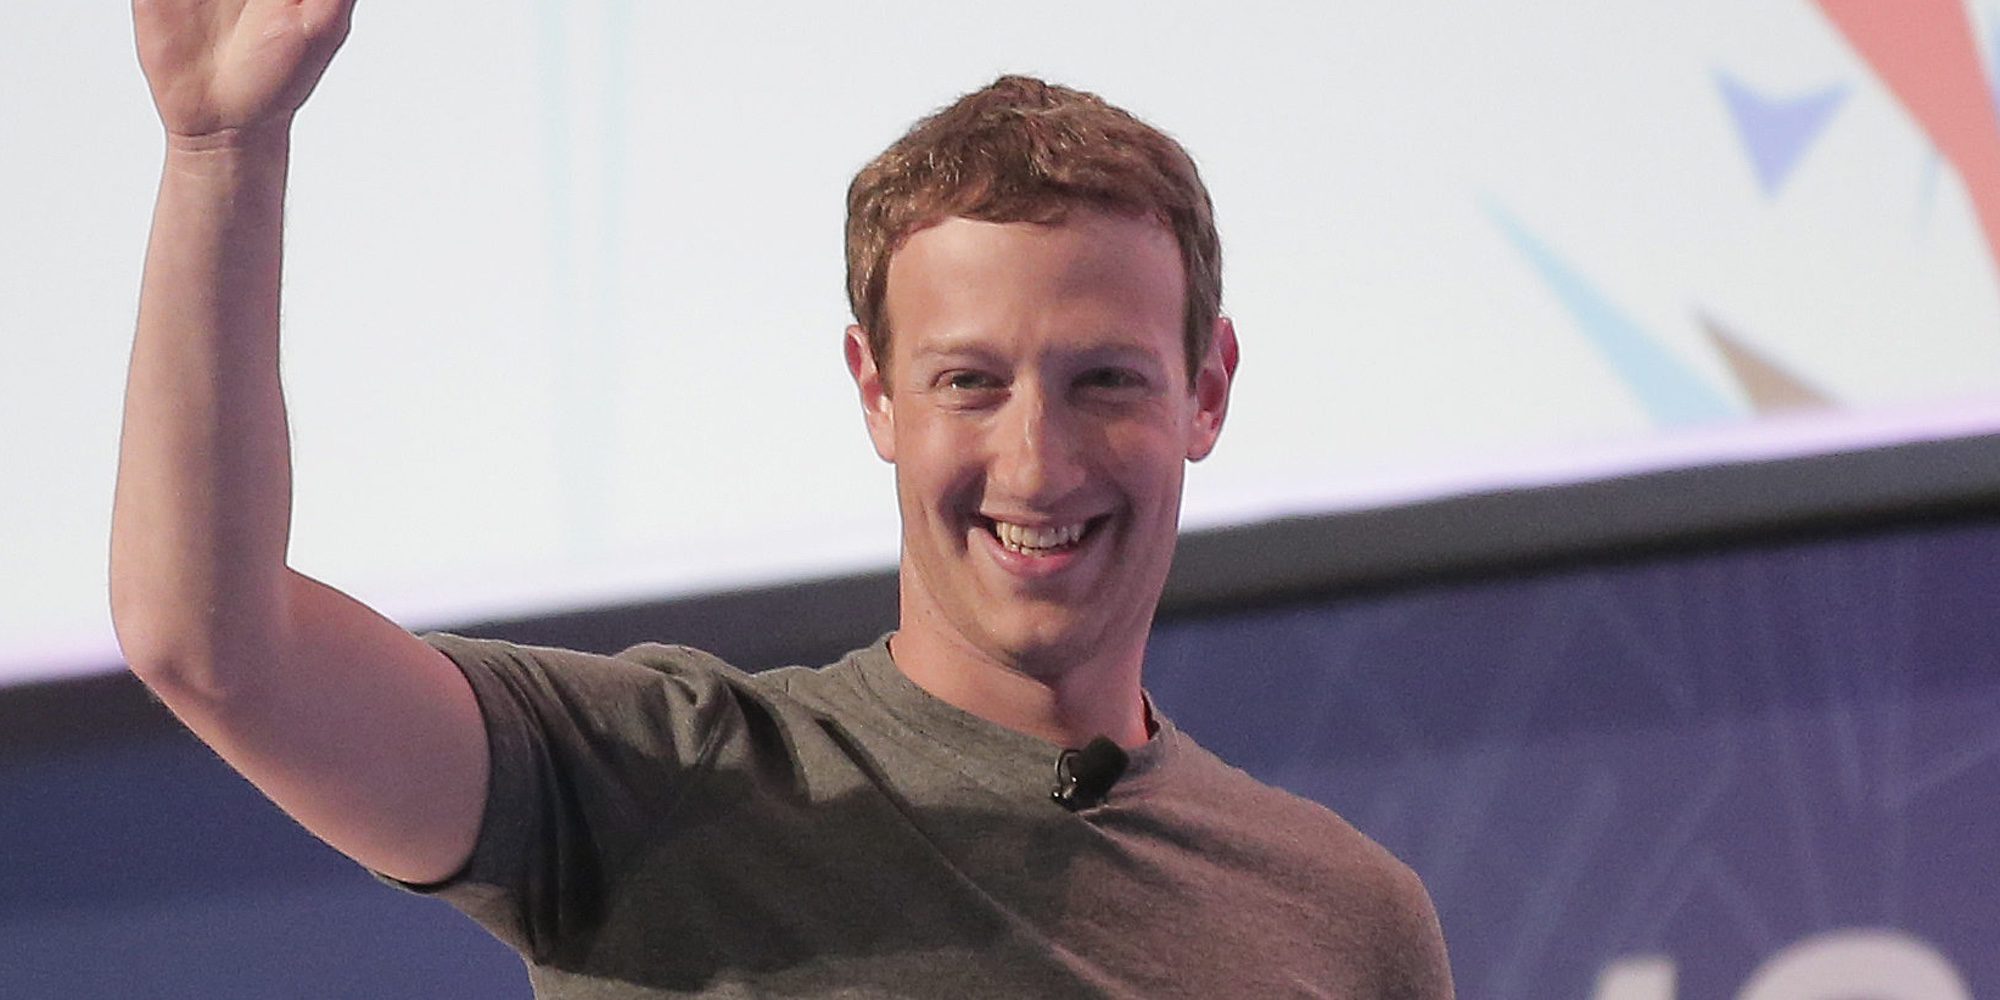 Mark Zuckerberg acude a la Universidad de Harvard para graduarse 15 años después de abandonar la carrera